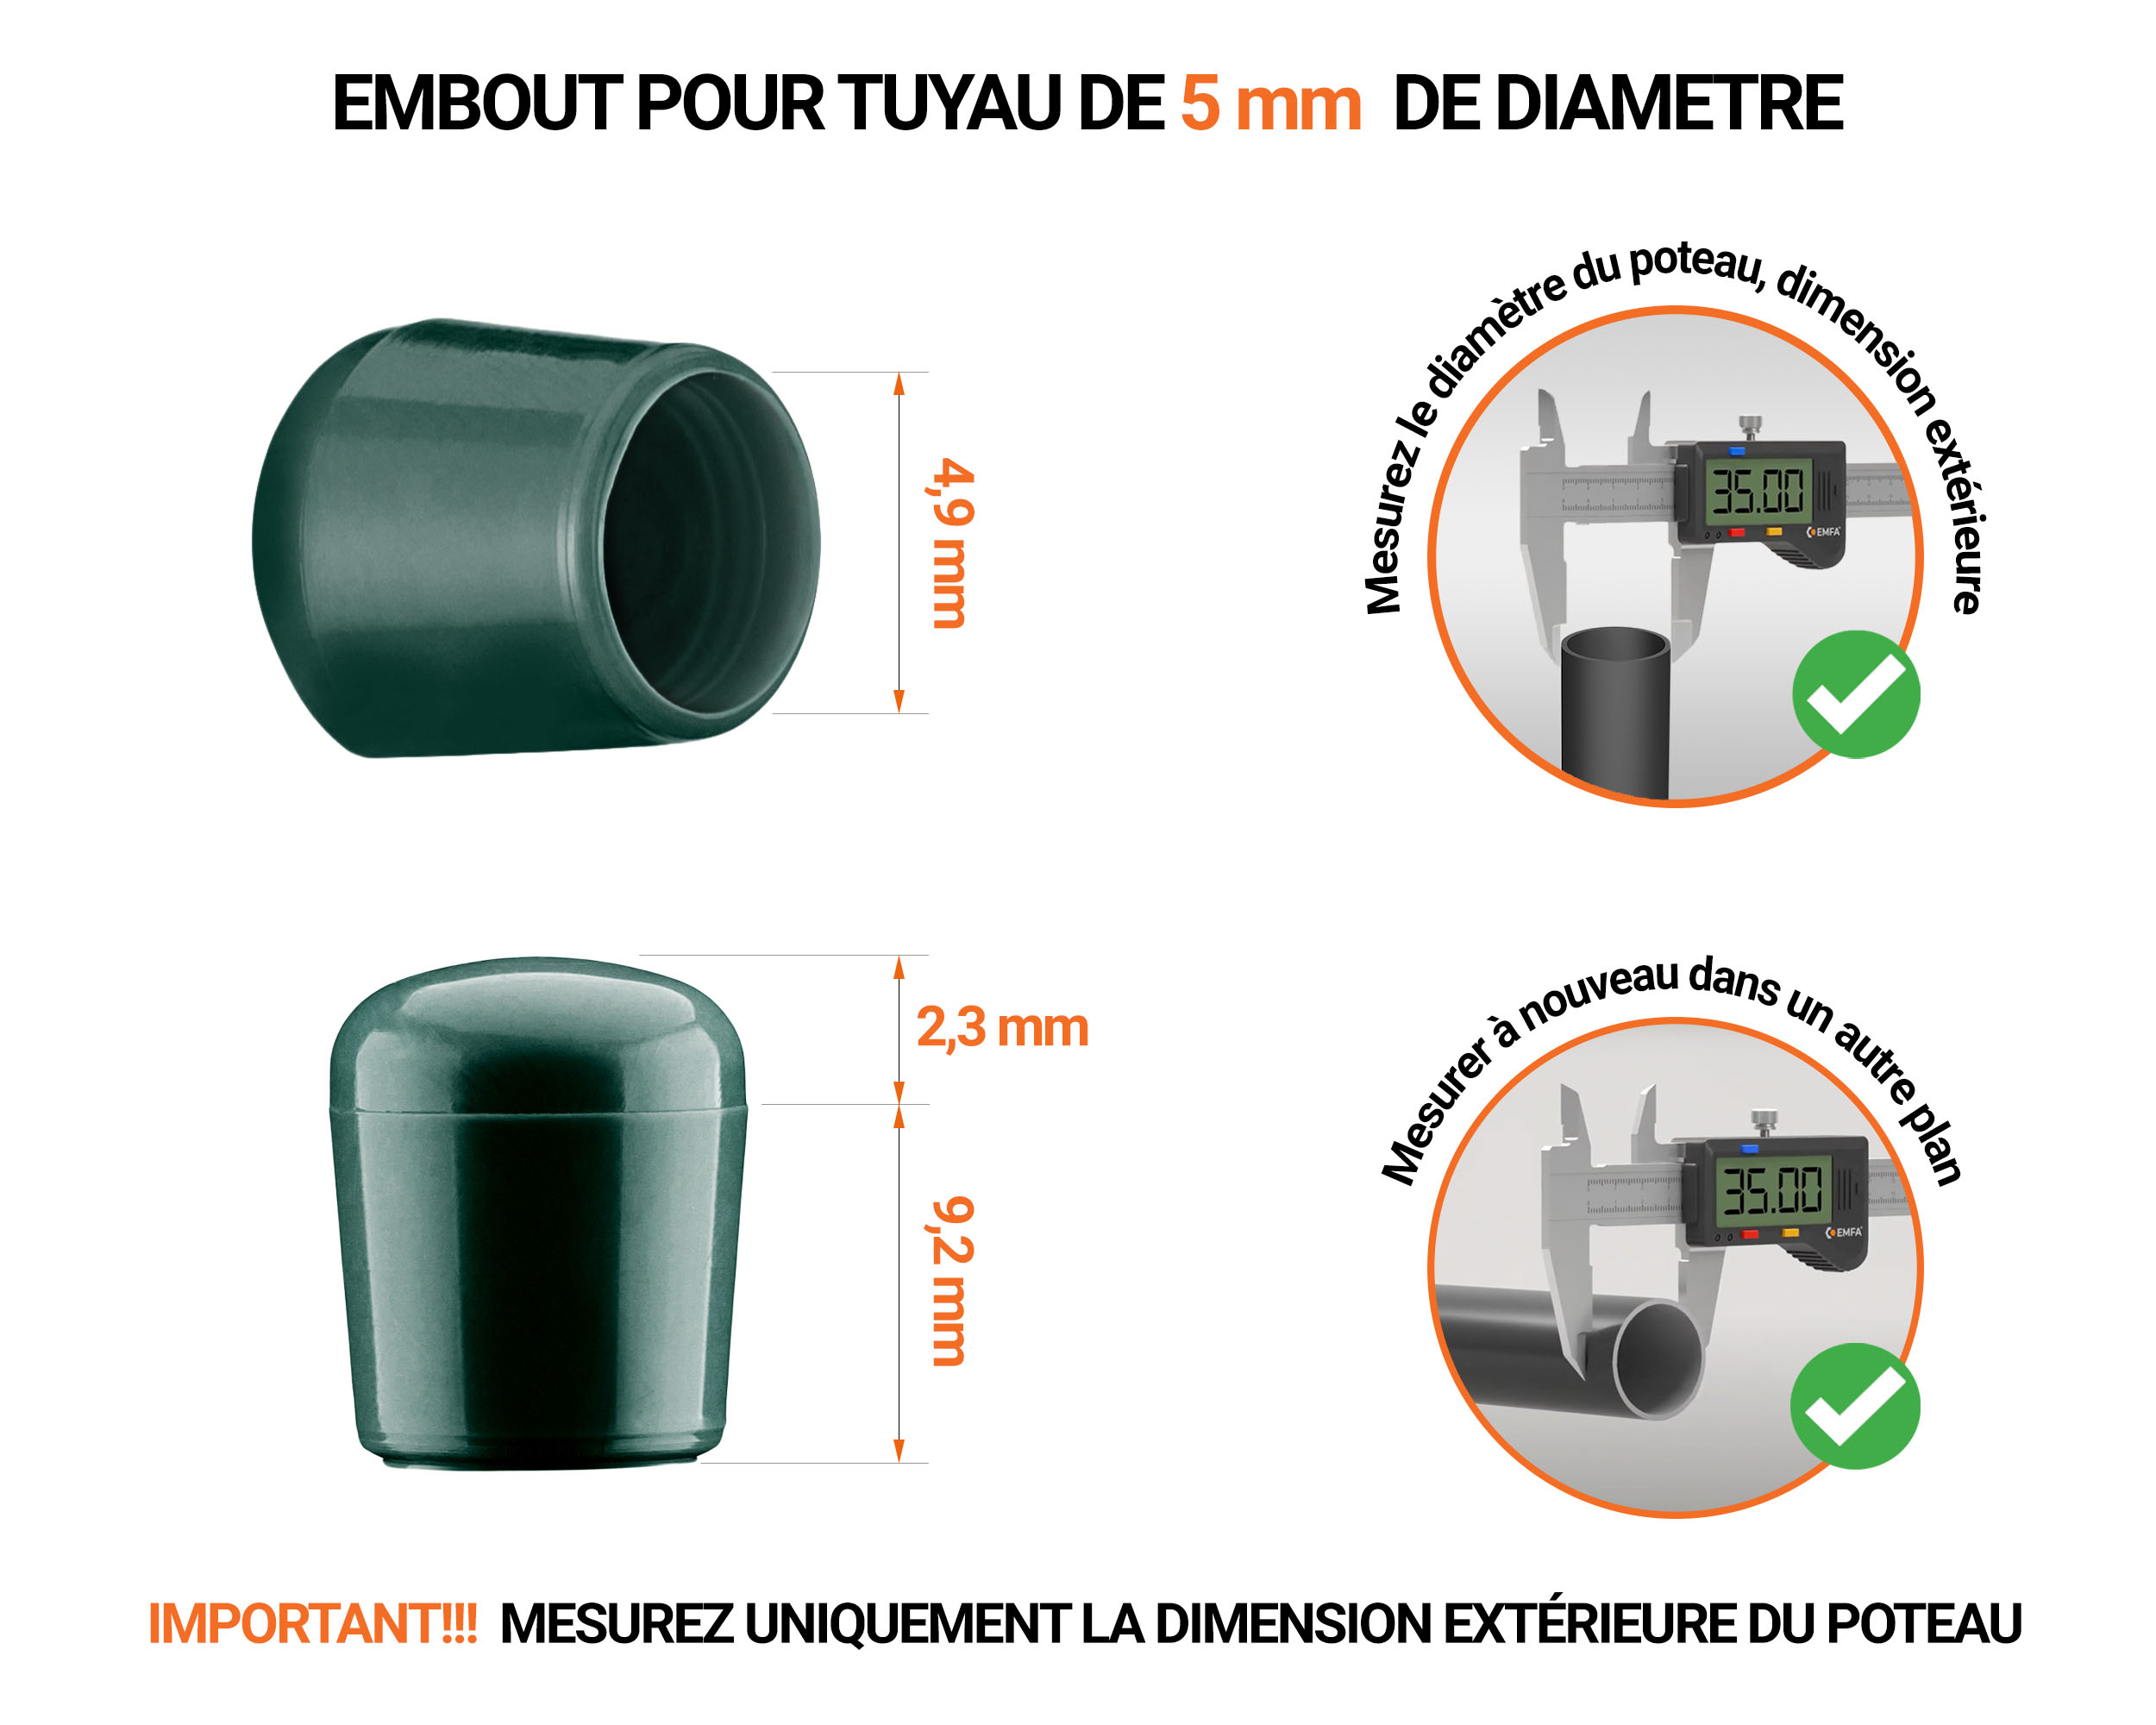 Embout vert de diamètre extérieur 5 mm pour tube rond avec dimensions et guide de mesure correcte du bouchon plastique.